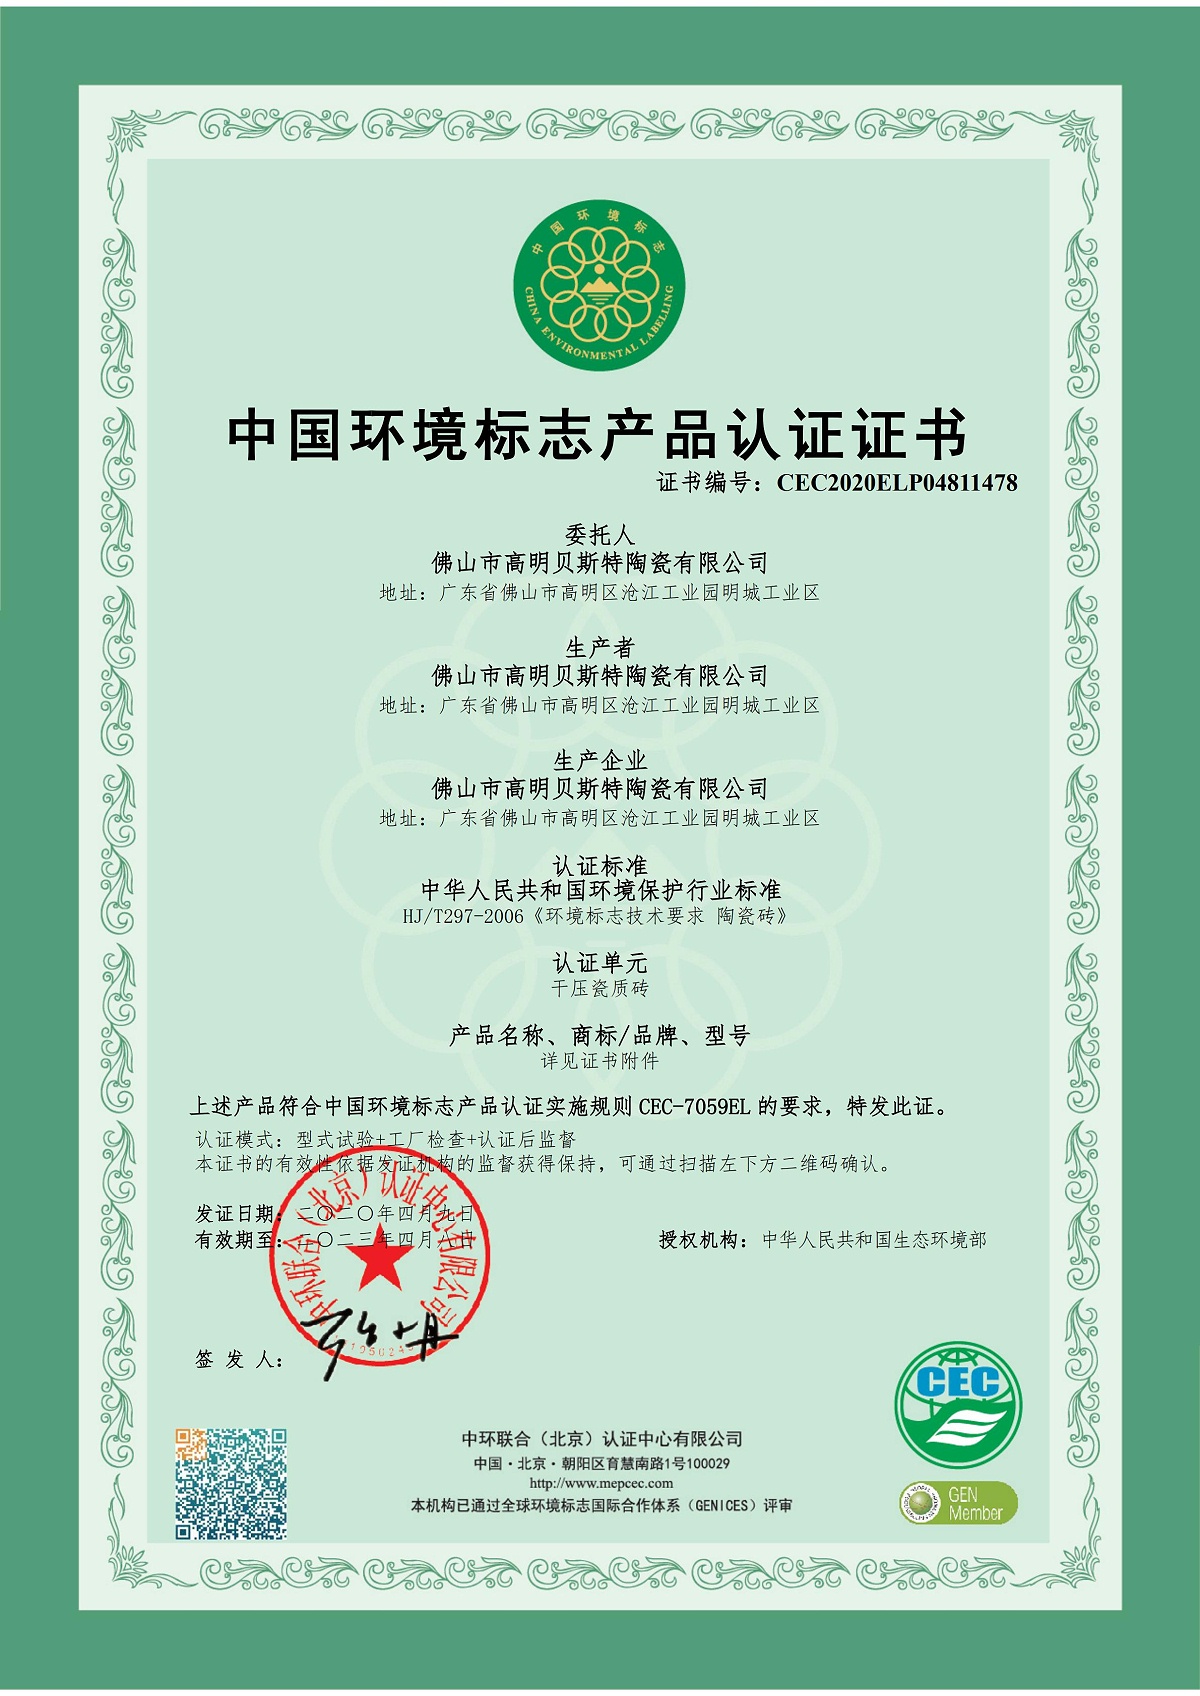 2020 中国环境标志产品认证证书（贝斯特）